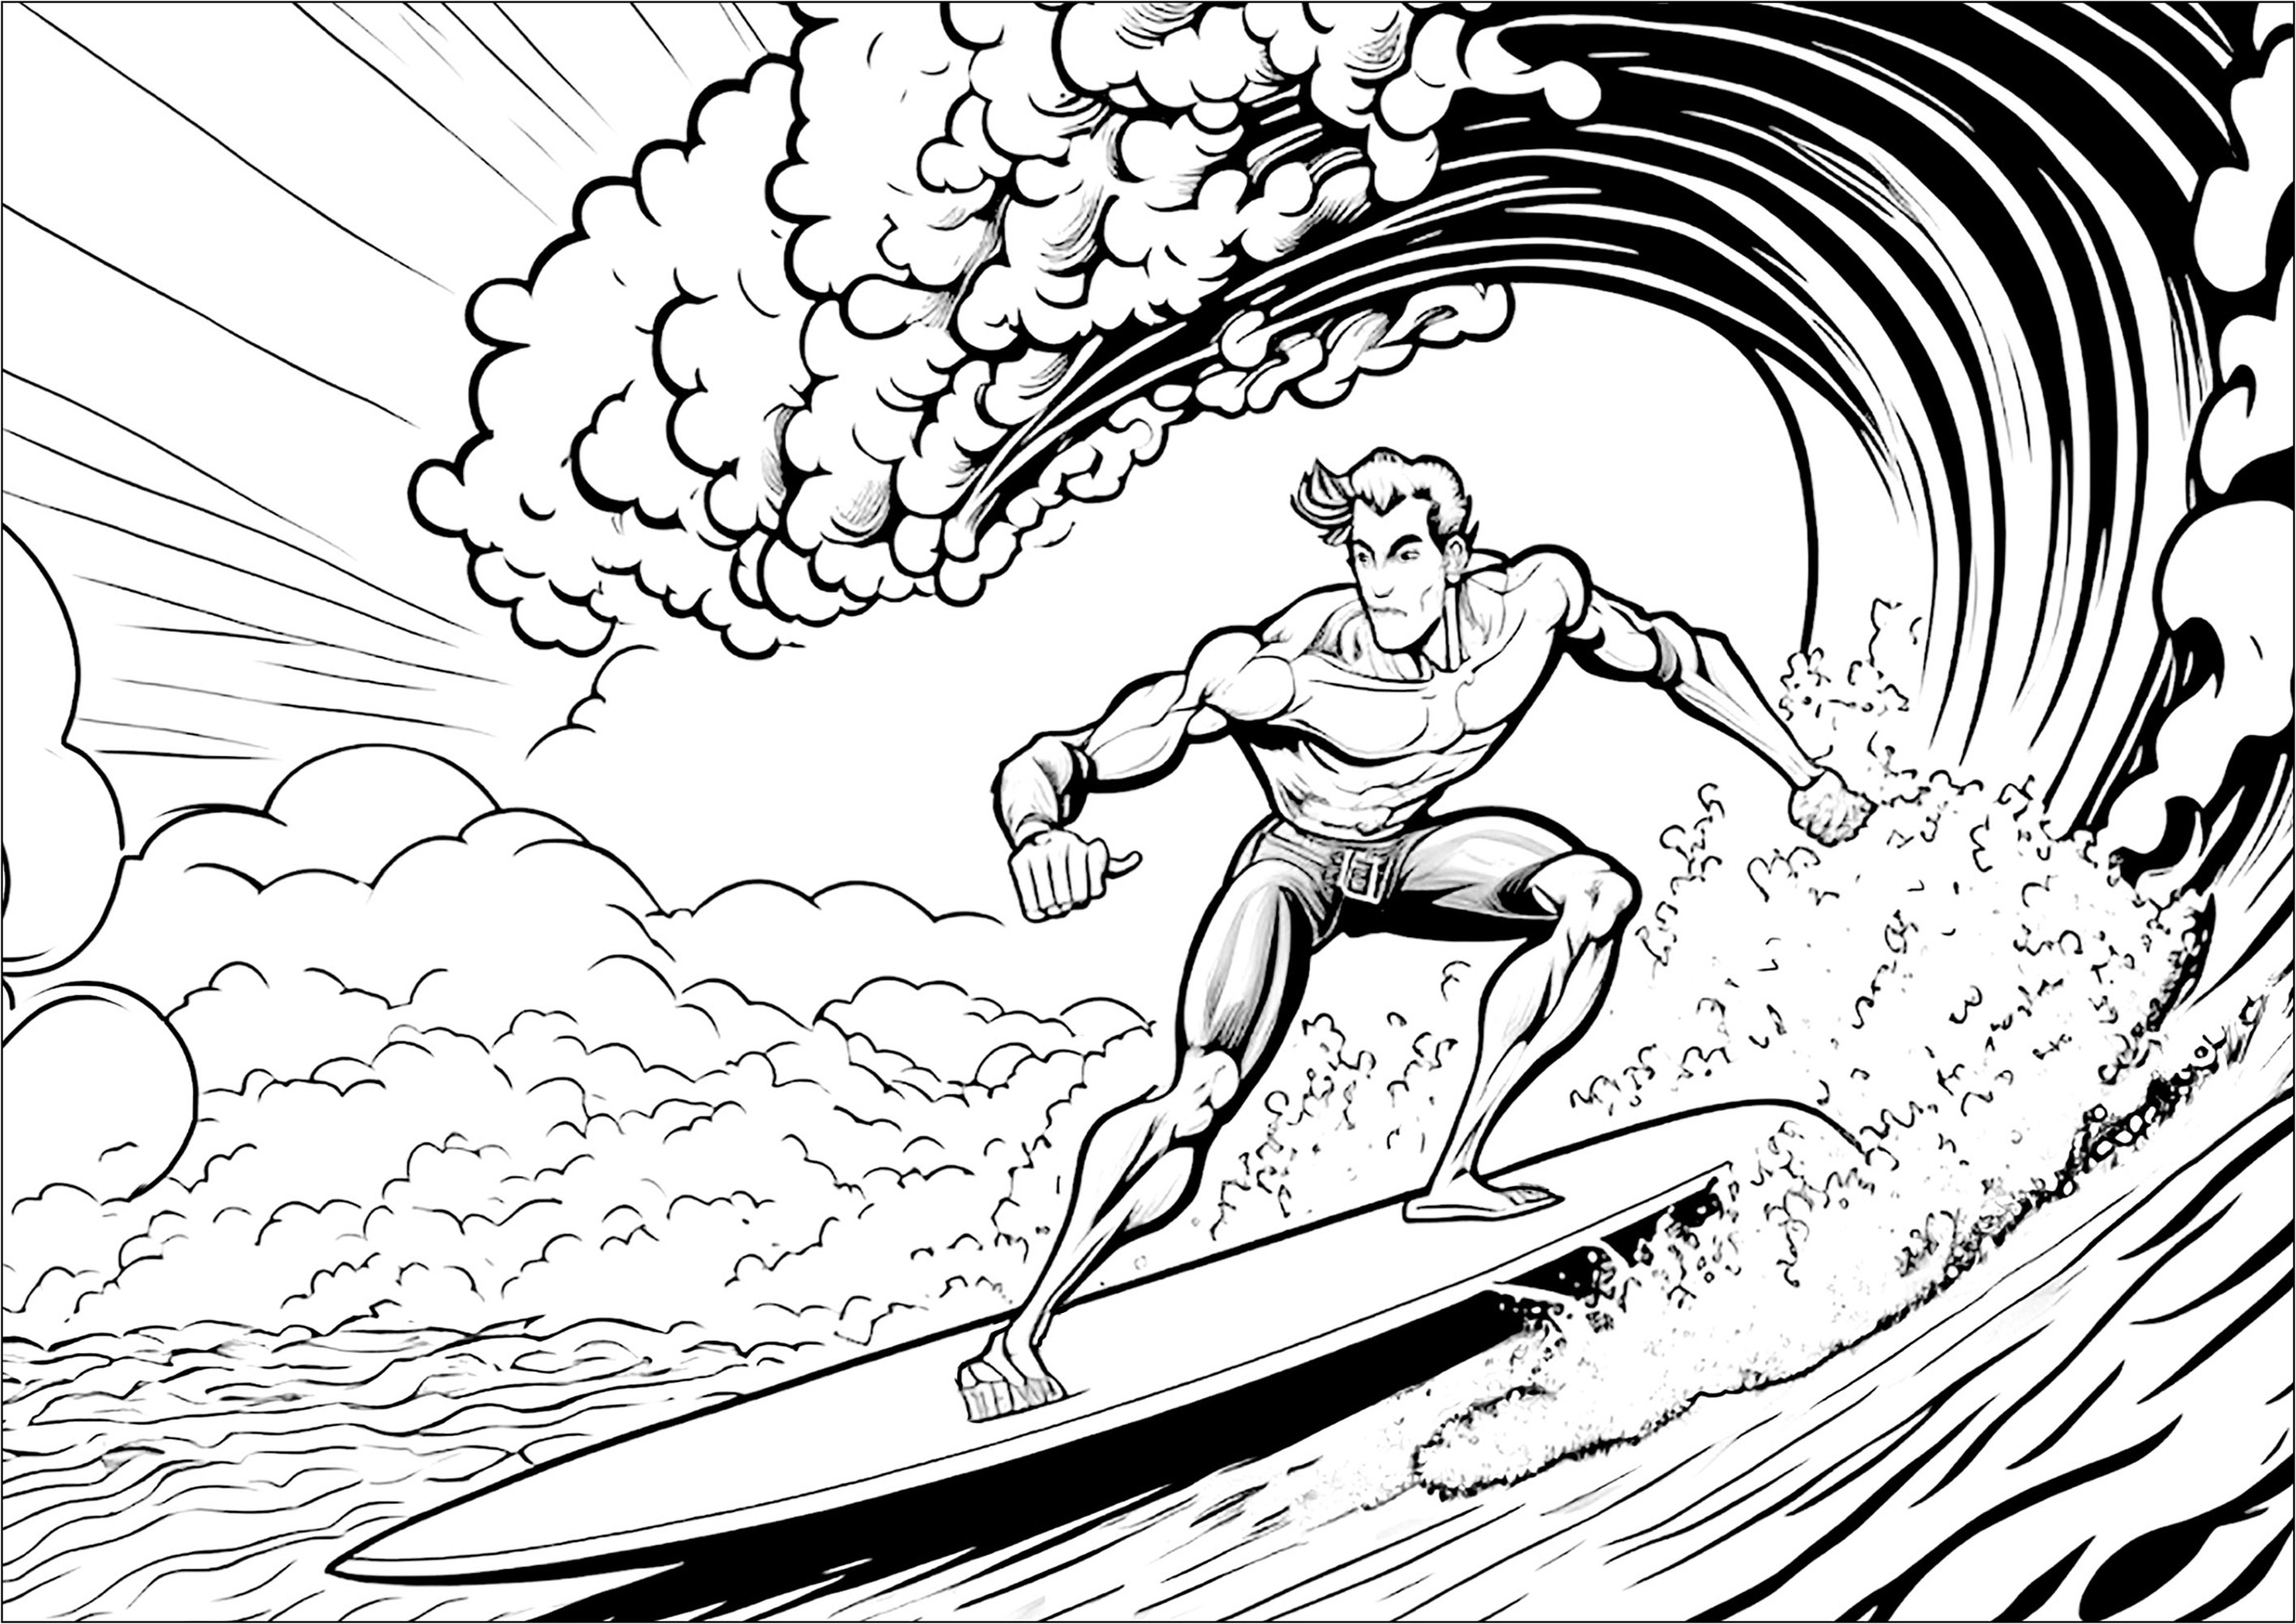 Surfer de l'extrême à colorier. Viens surfer sur les vagues avec ce coloriage de surfeur prêt à tout pour affronter les plus grandes vagues ! Rejoins ce passionné de sports extrêmes en train de dompter ce monstre d'eau qui déferle sur lui.